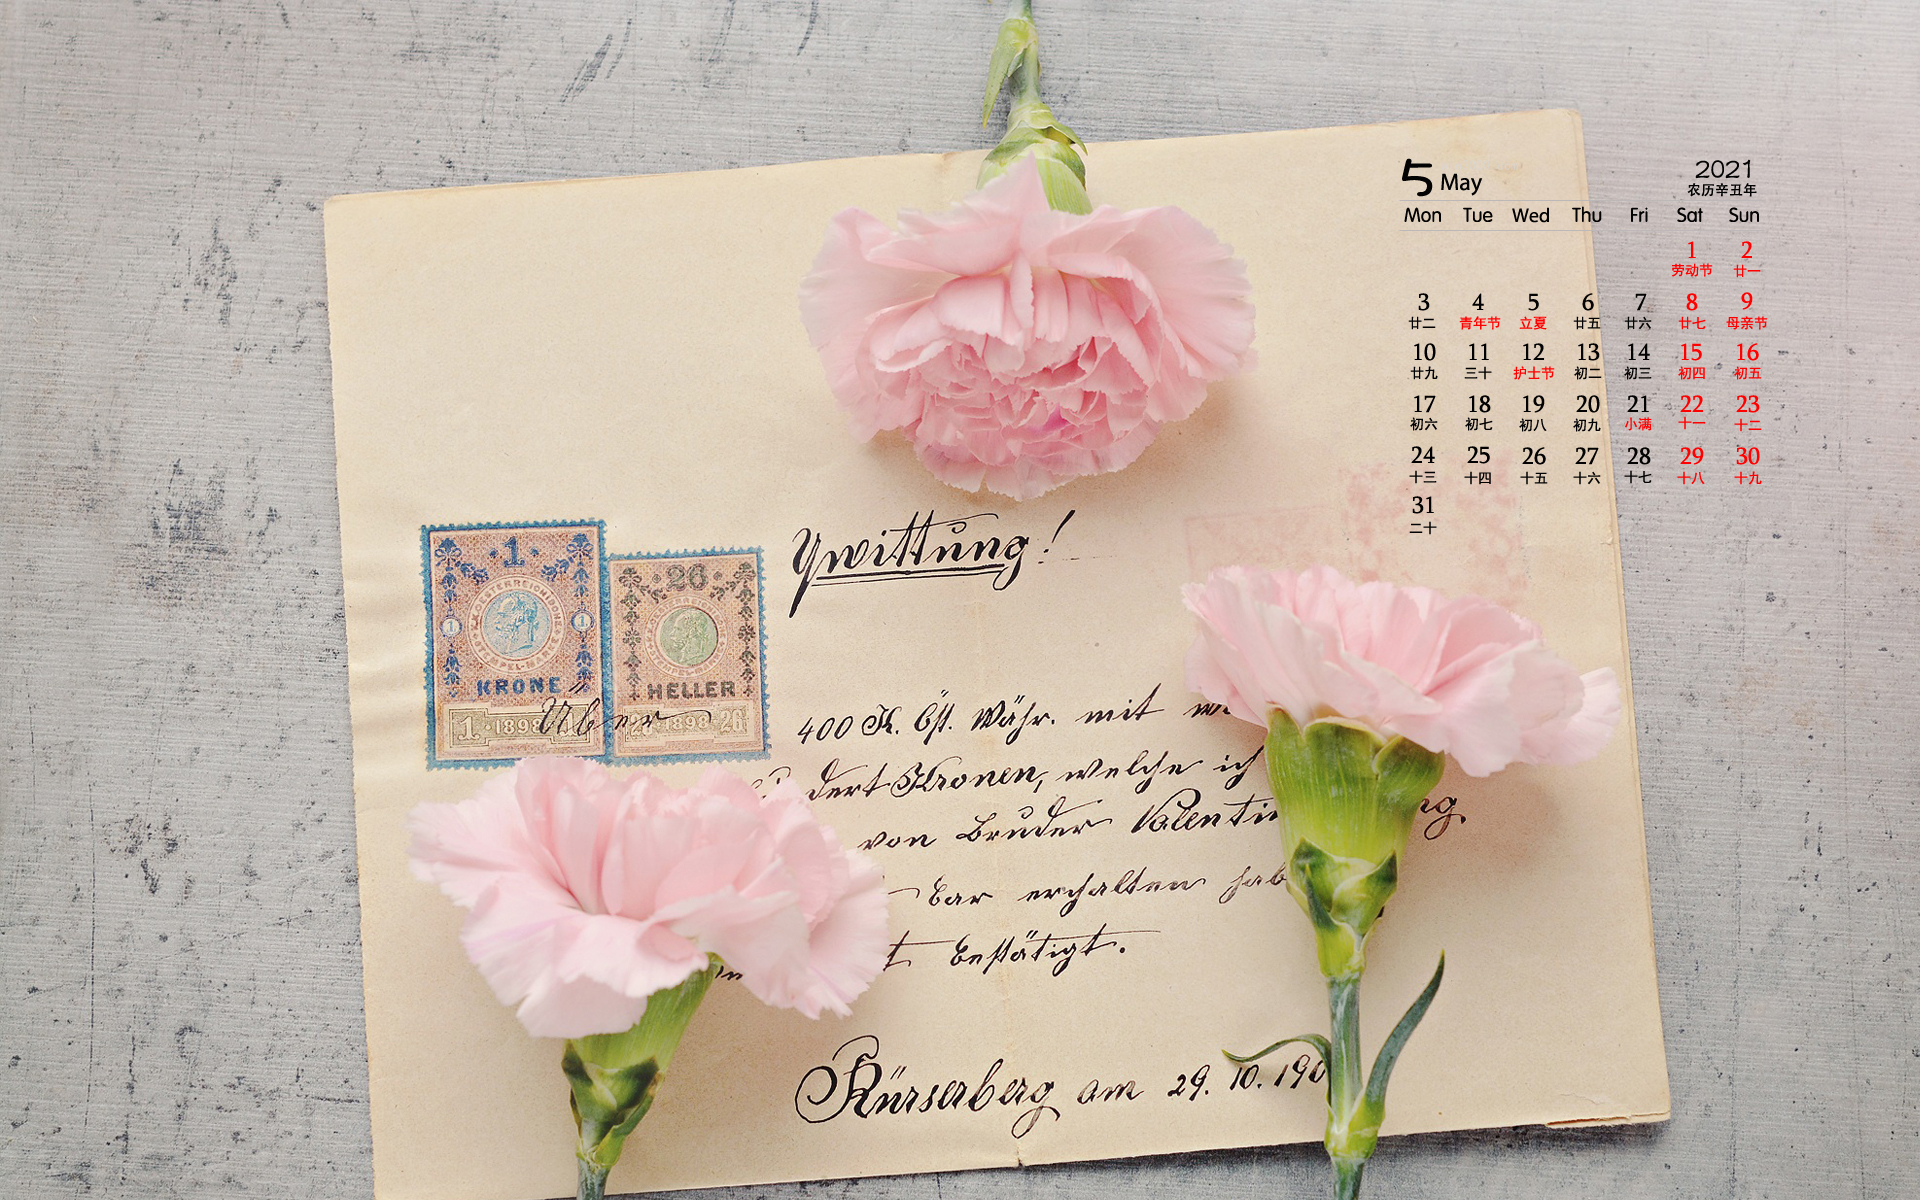 2021年5月母亲节花朵桌面日历壁纸